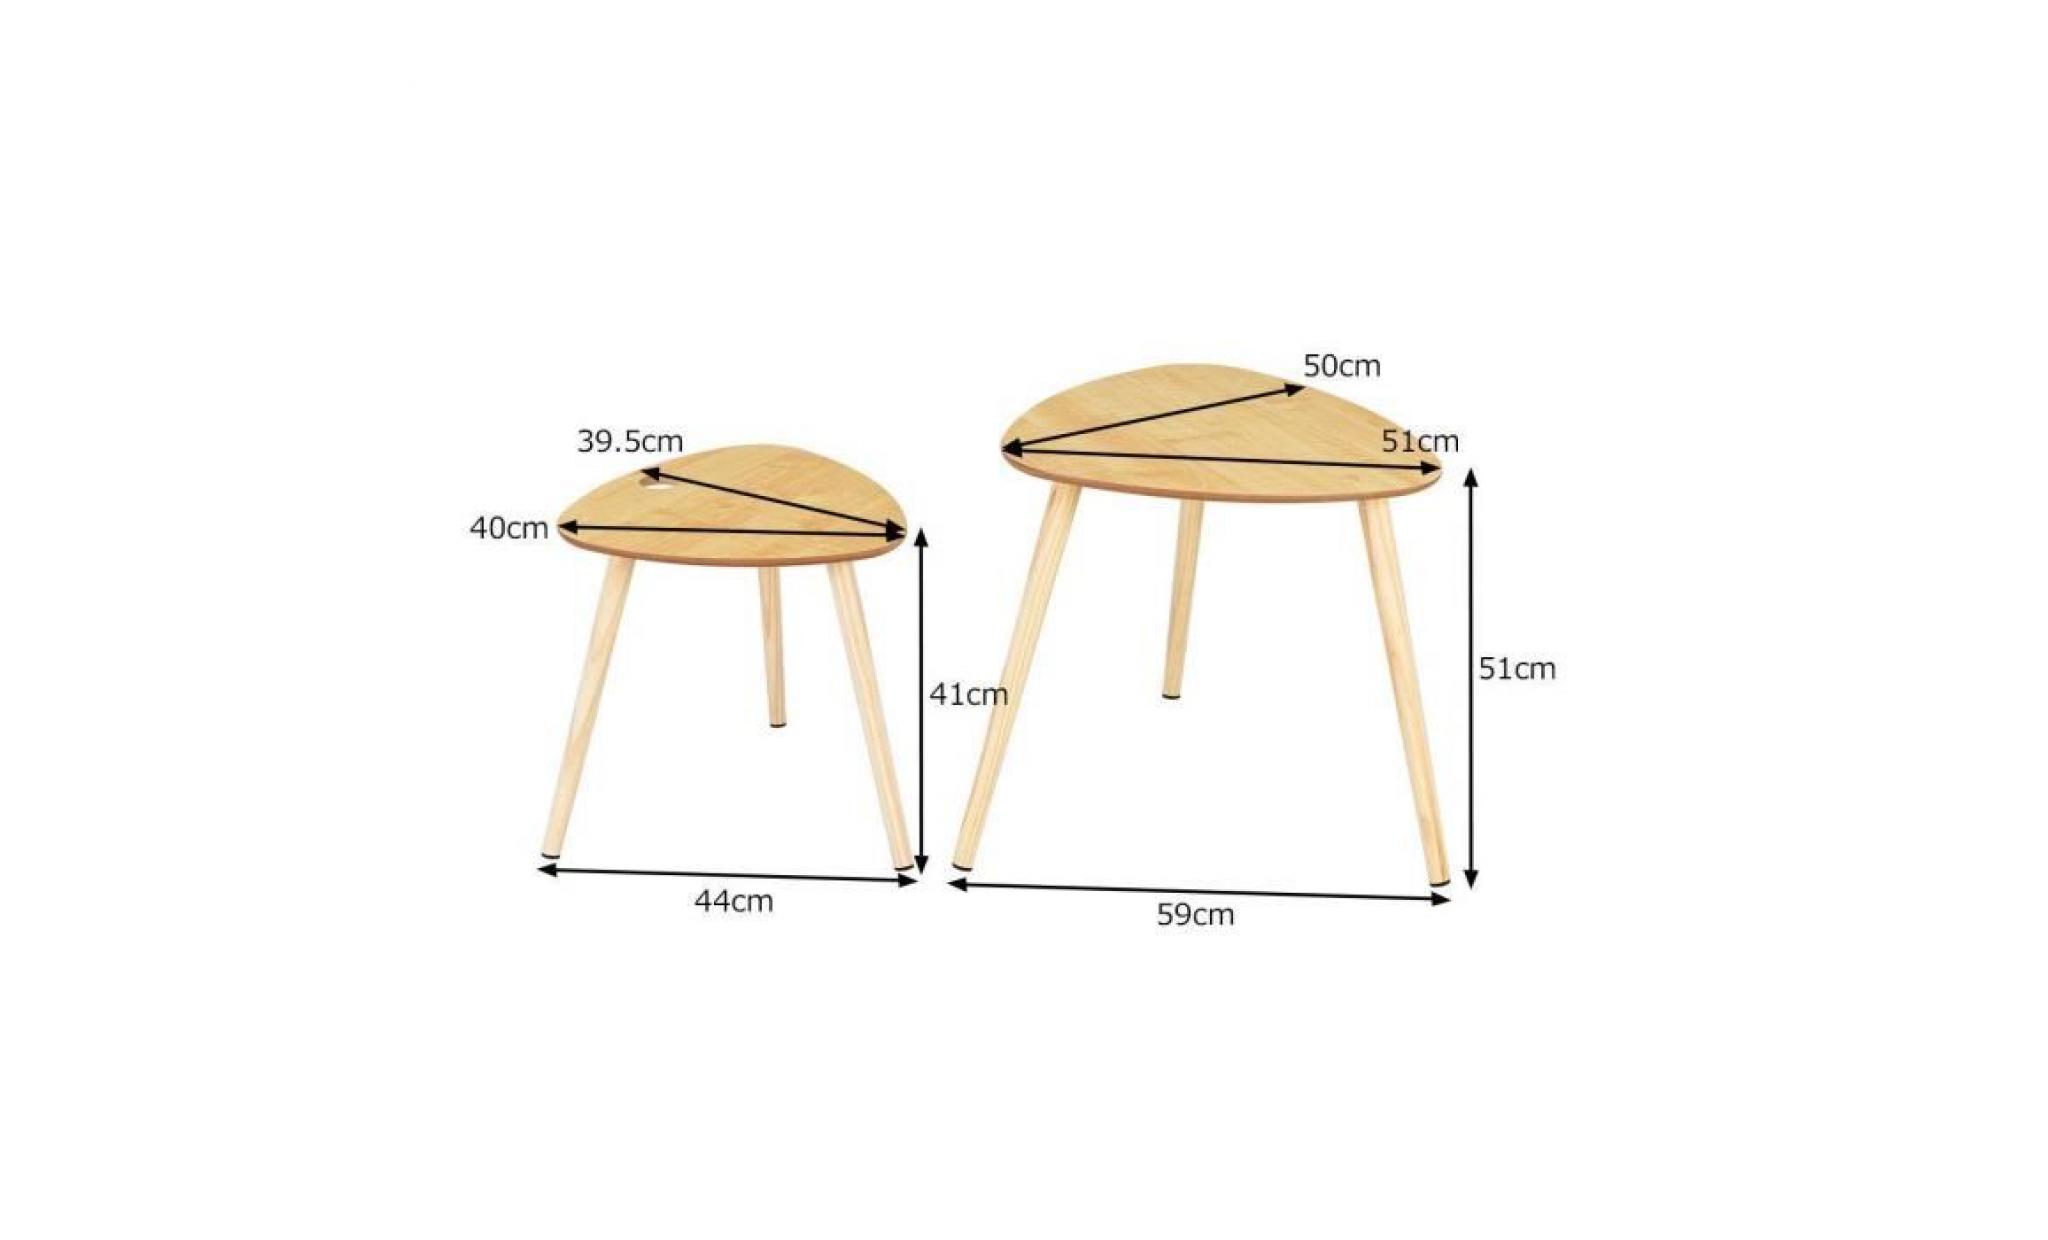 costway table basse en bois table d'appoint 15 mm mdf table basse de café pour bureau, jardin, salon,balcon (naturel) pas cher